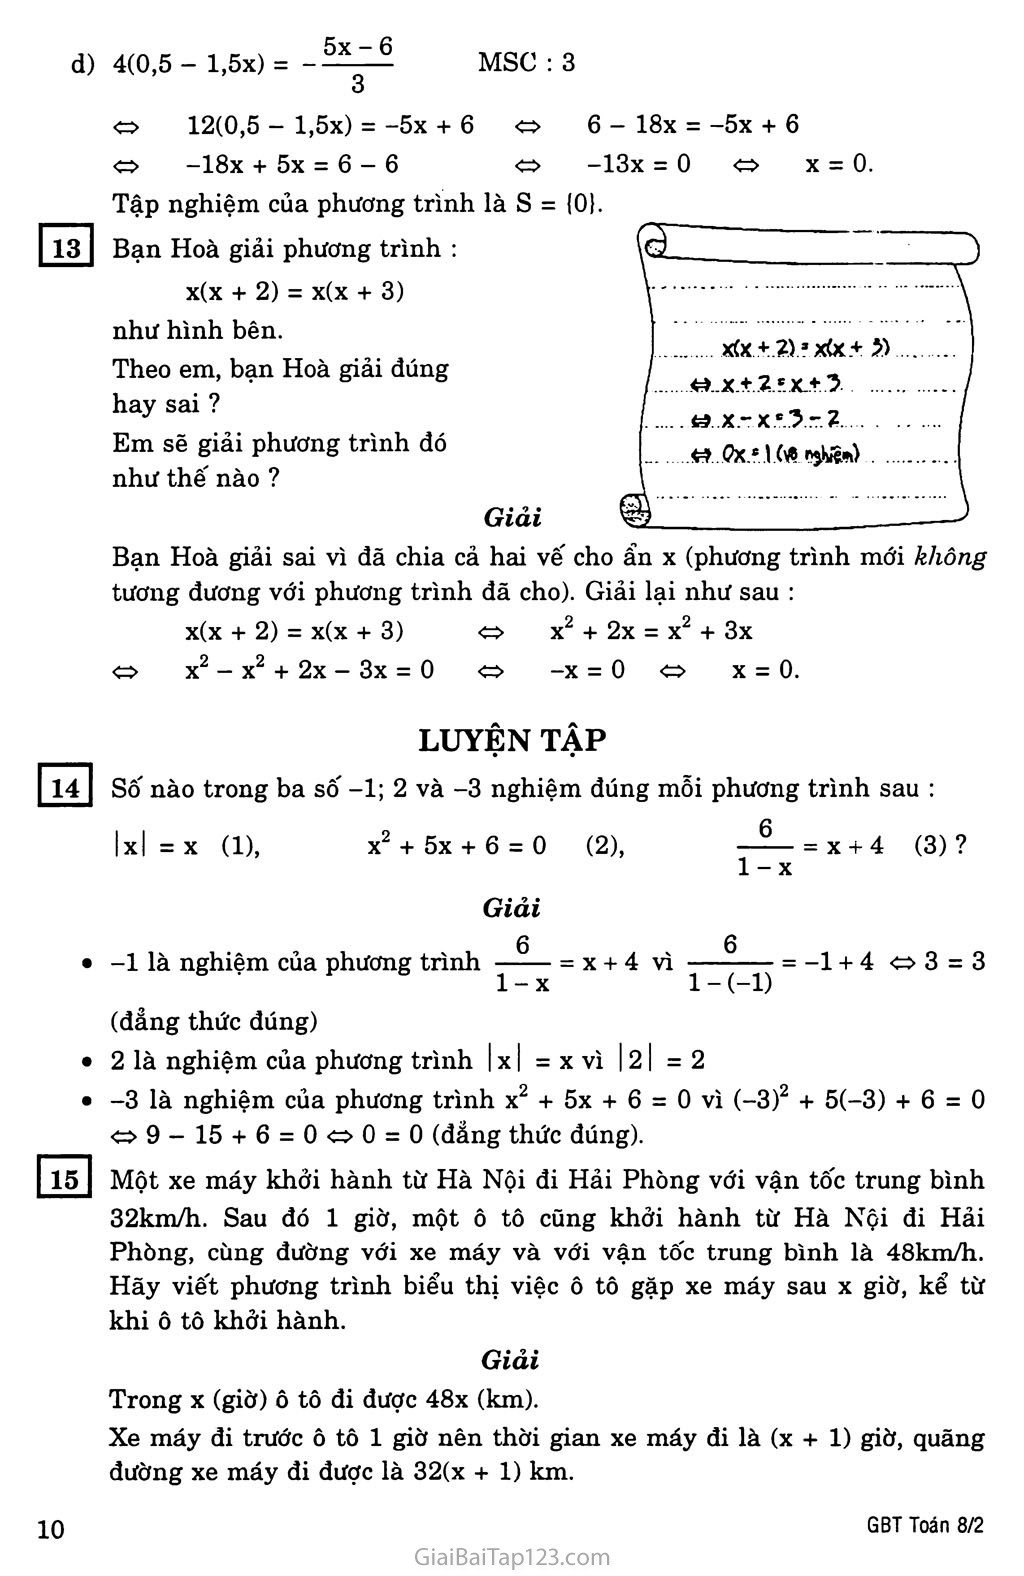 §3. Phương trình đưa được về dạng ax + b = 0 trang 4